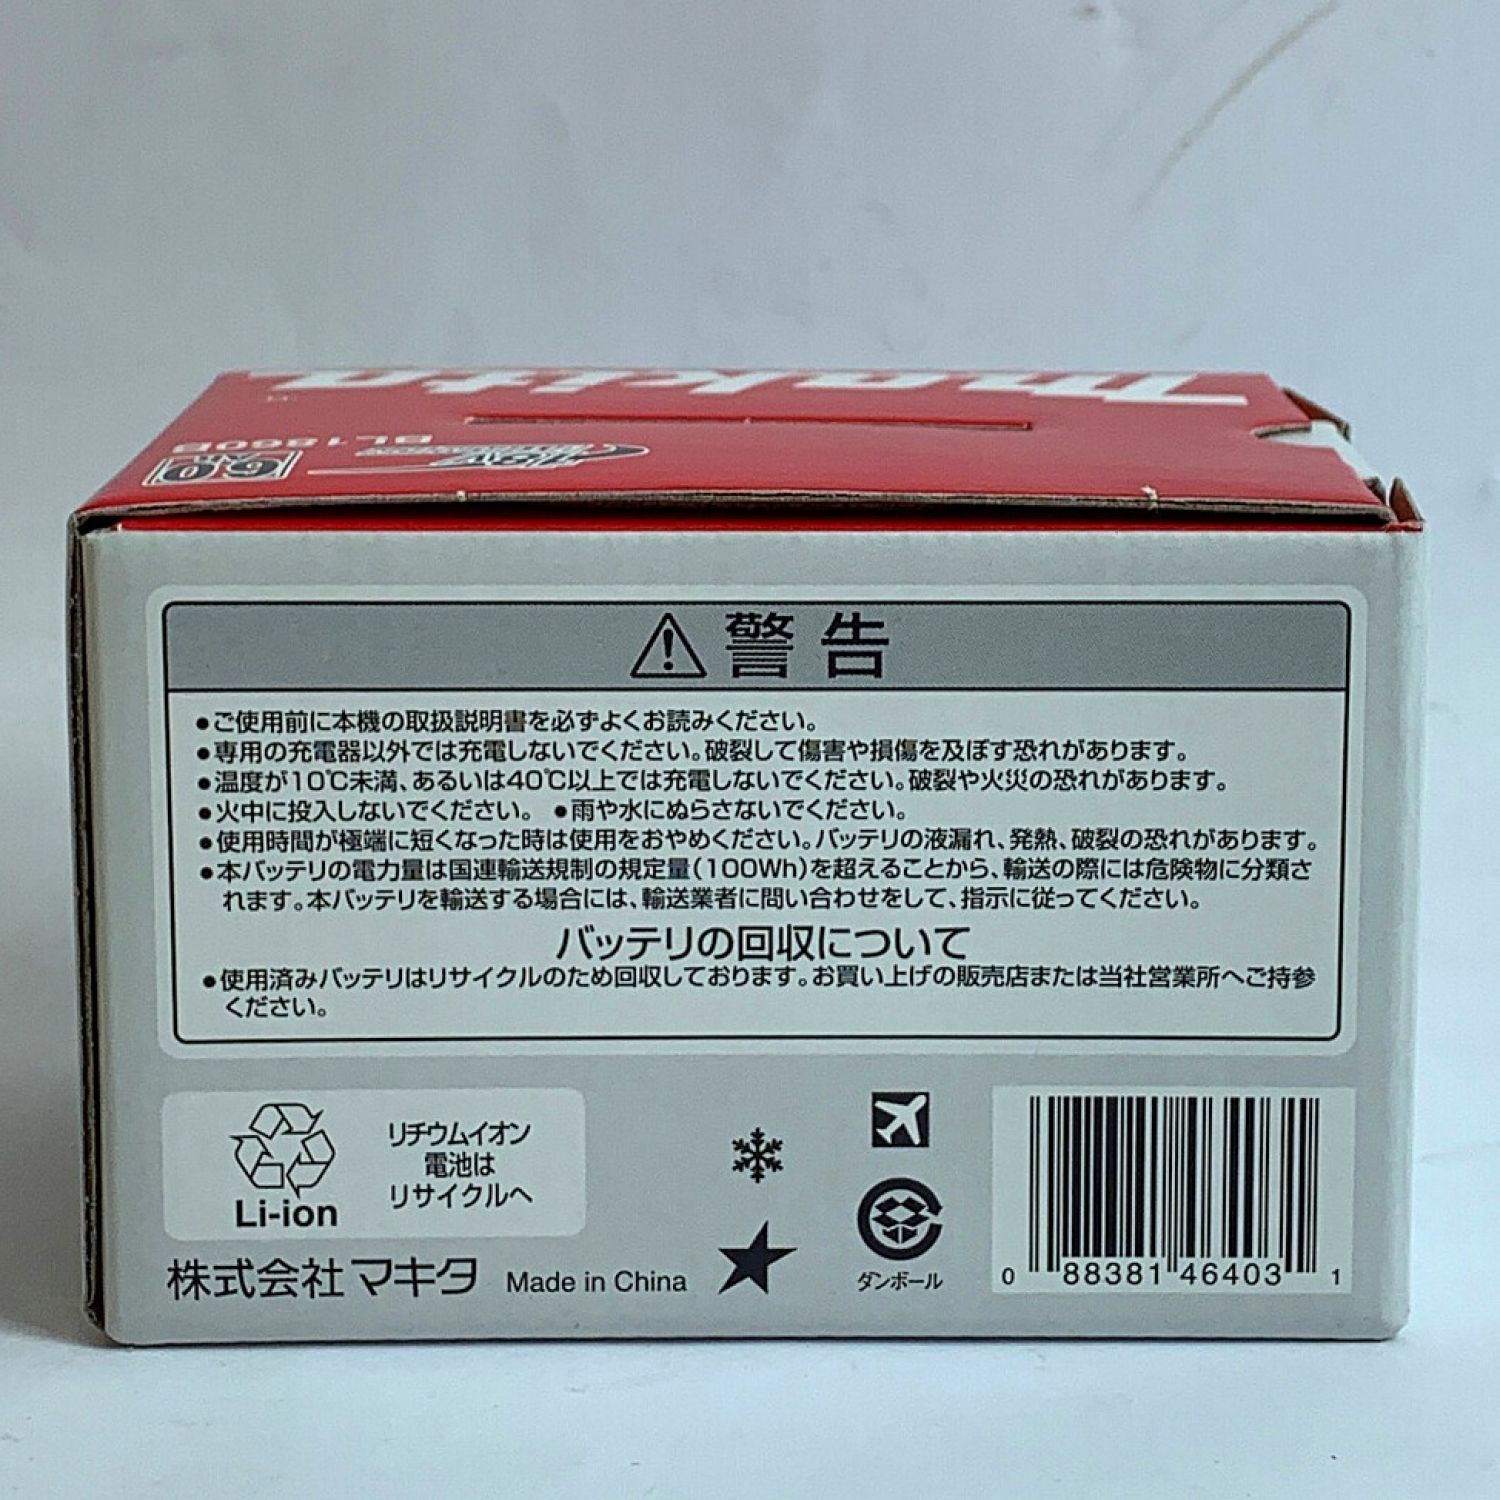 MAKITA マキタ バッテリー18V　6.0AH　【未使用品】 BL1860B Sランク